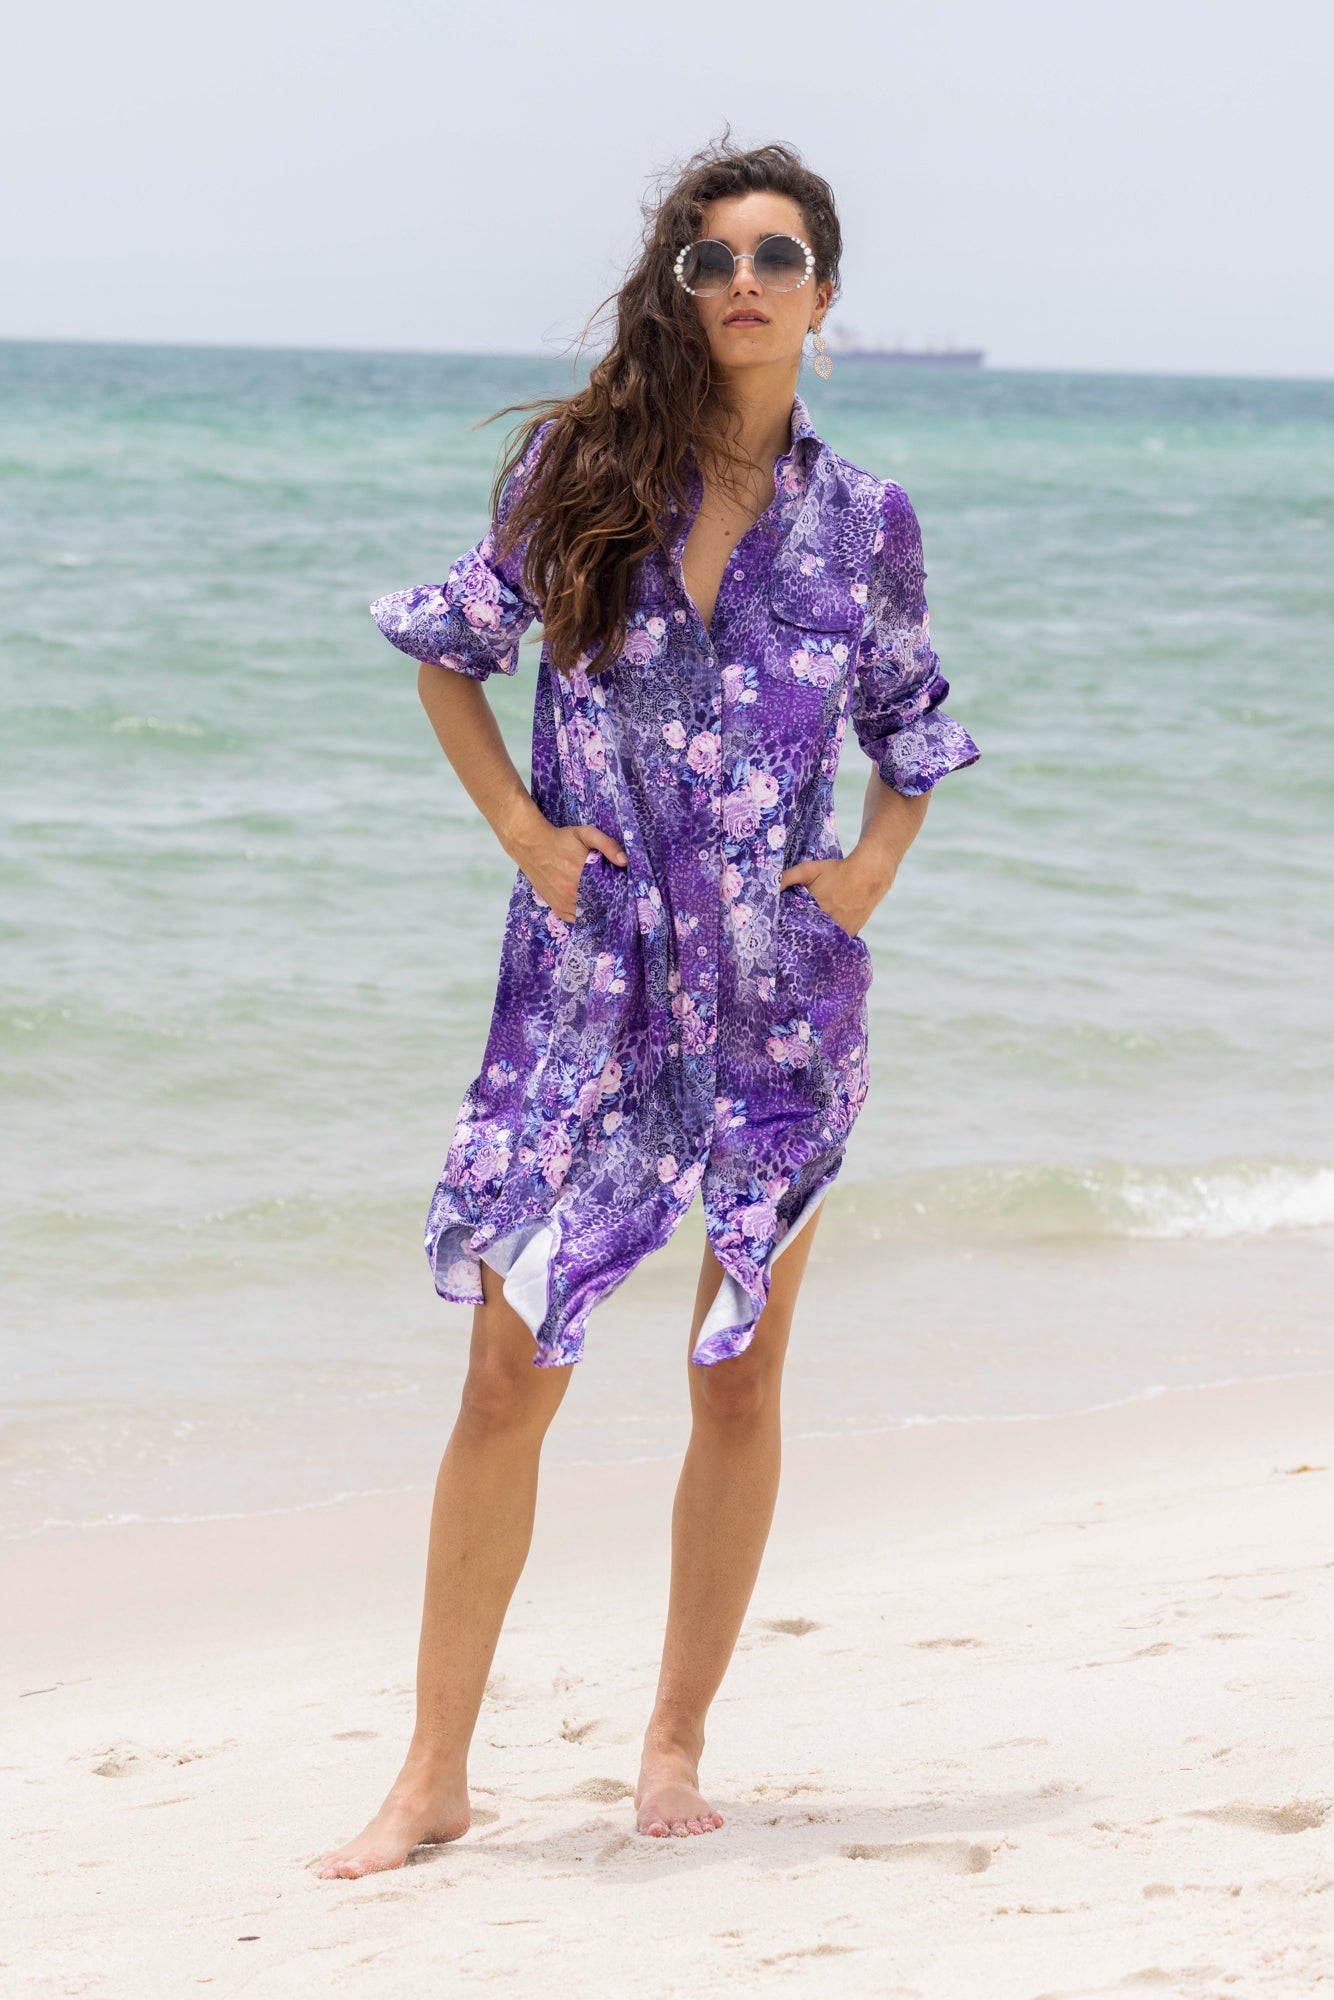 naples shirt dress purple lace front beachview